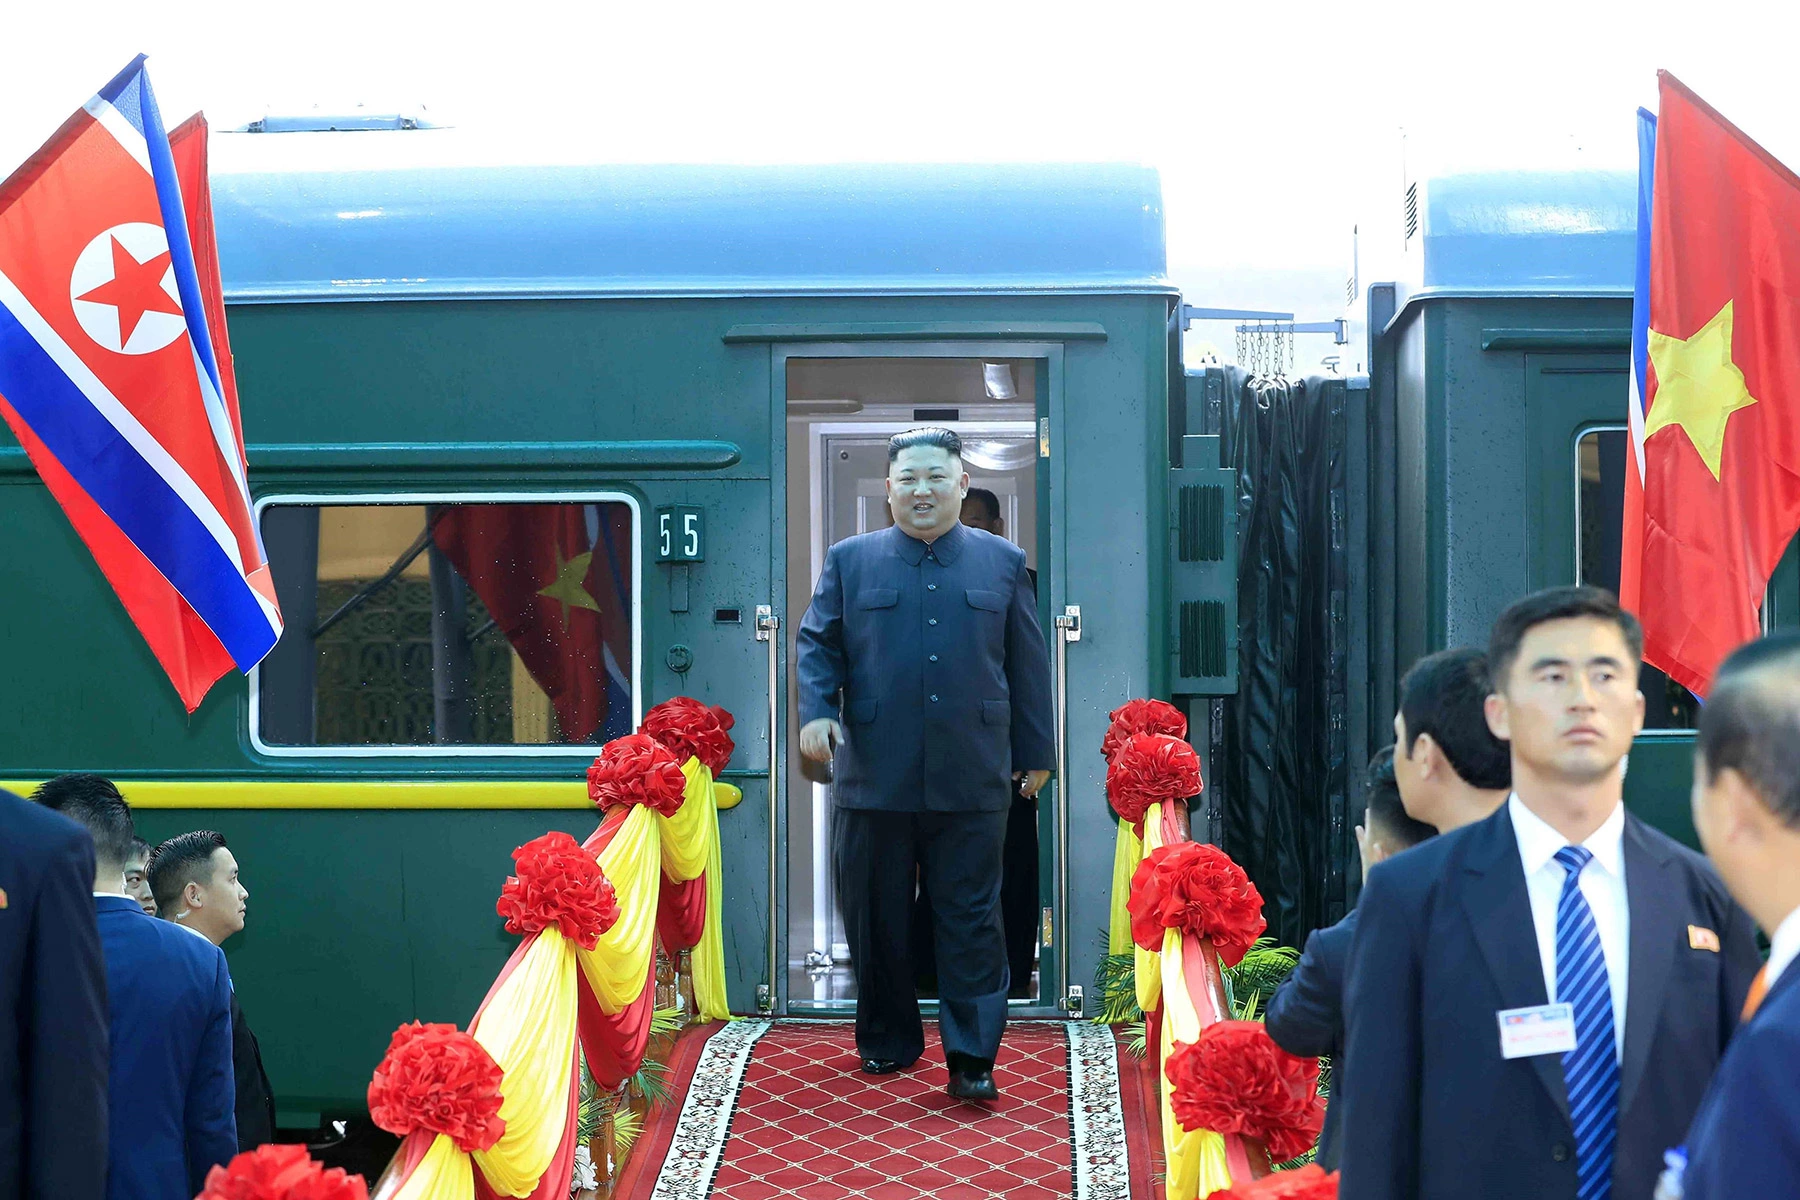 <p>Ким Чен Ын во время прибытия на станцию Донг Данг во Вьетнаме, куда северокорейский лидер приехал на поезде с официальным визитом в феврале 2019 года</p>